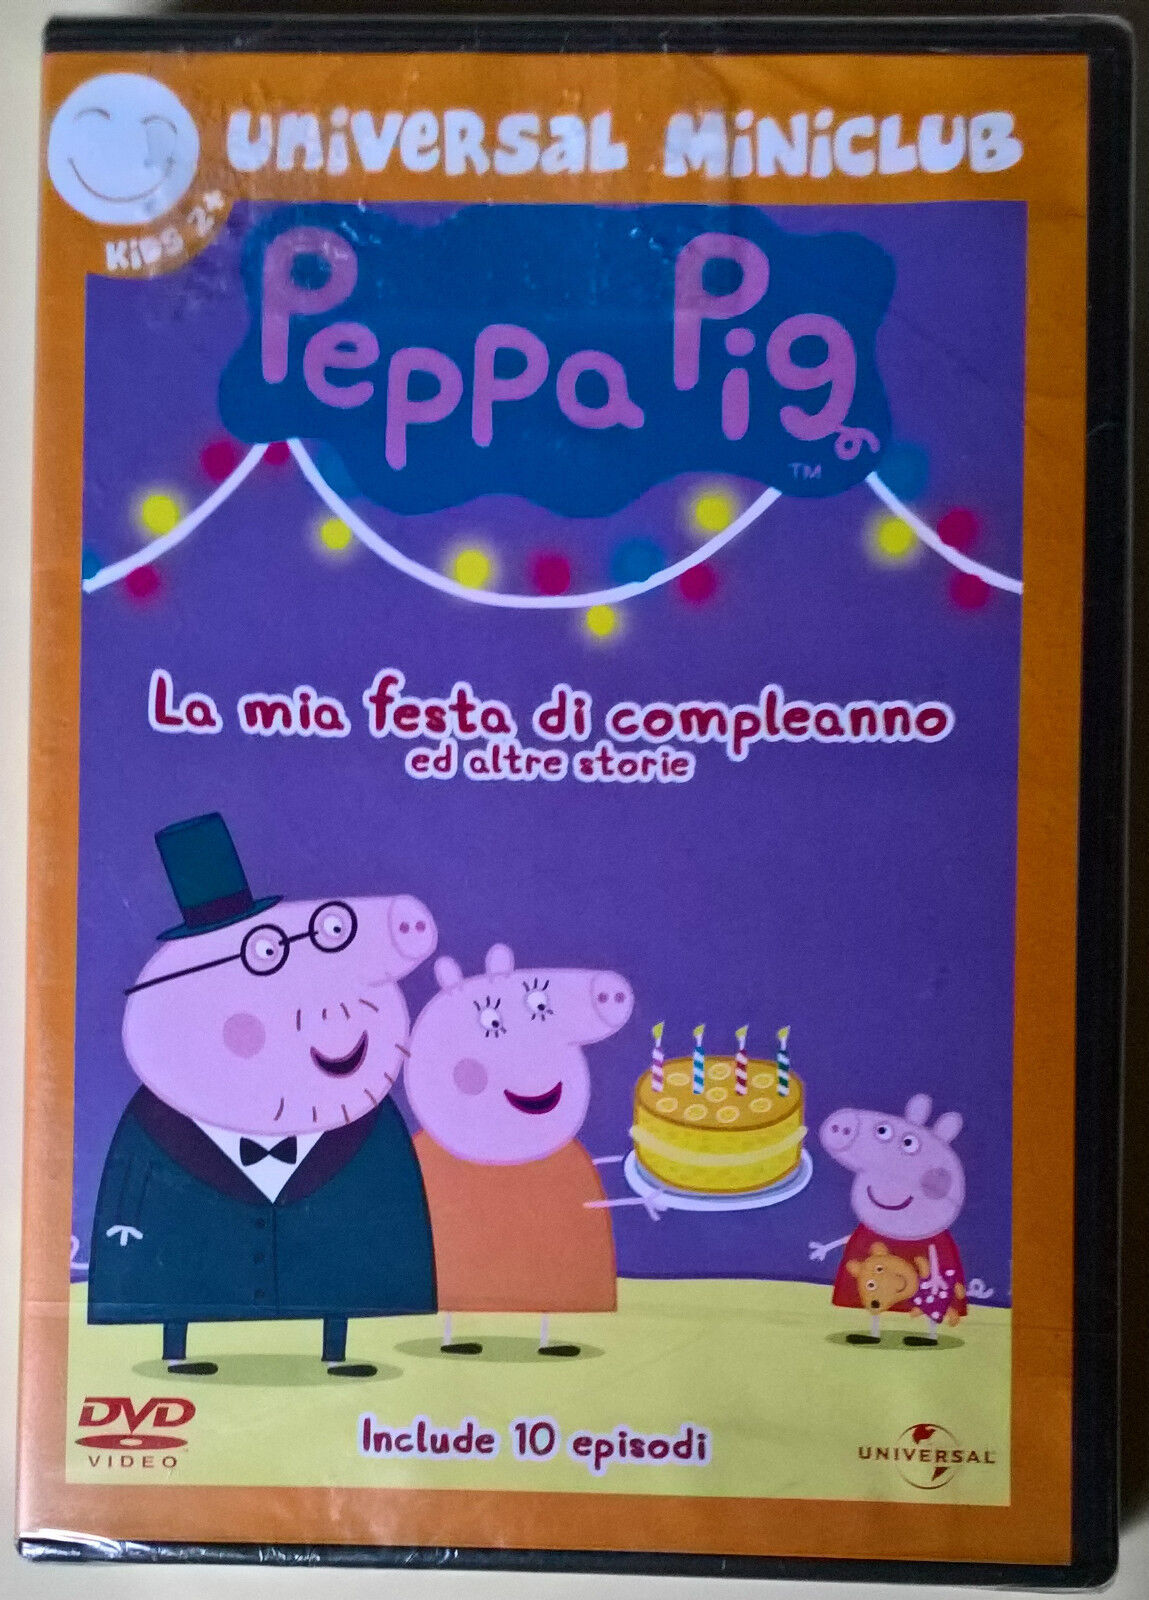 DVD - Peppa Pig - La mia festa di compleanno e altre storie - Include 10 episodi